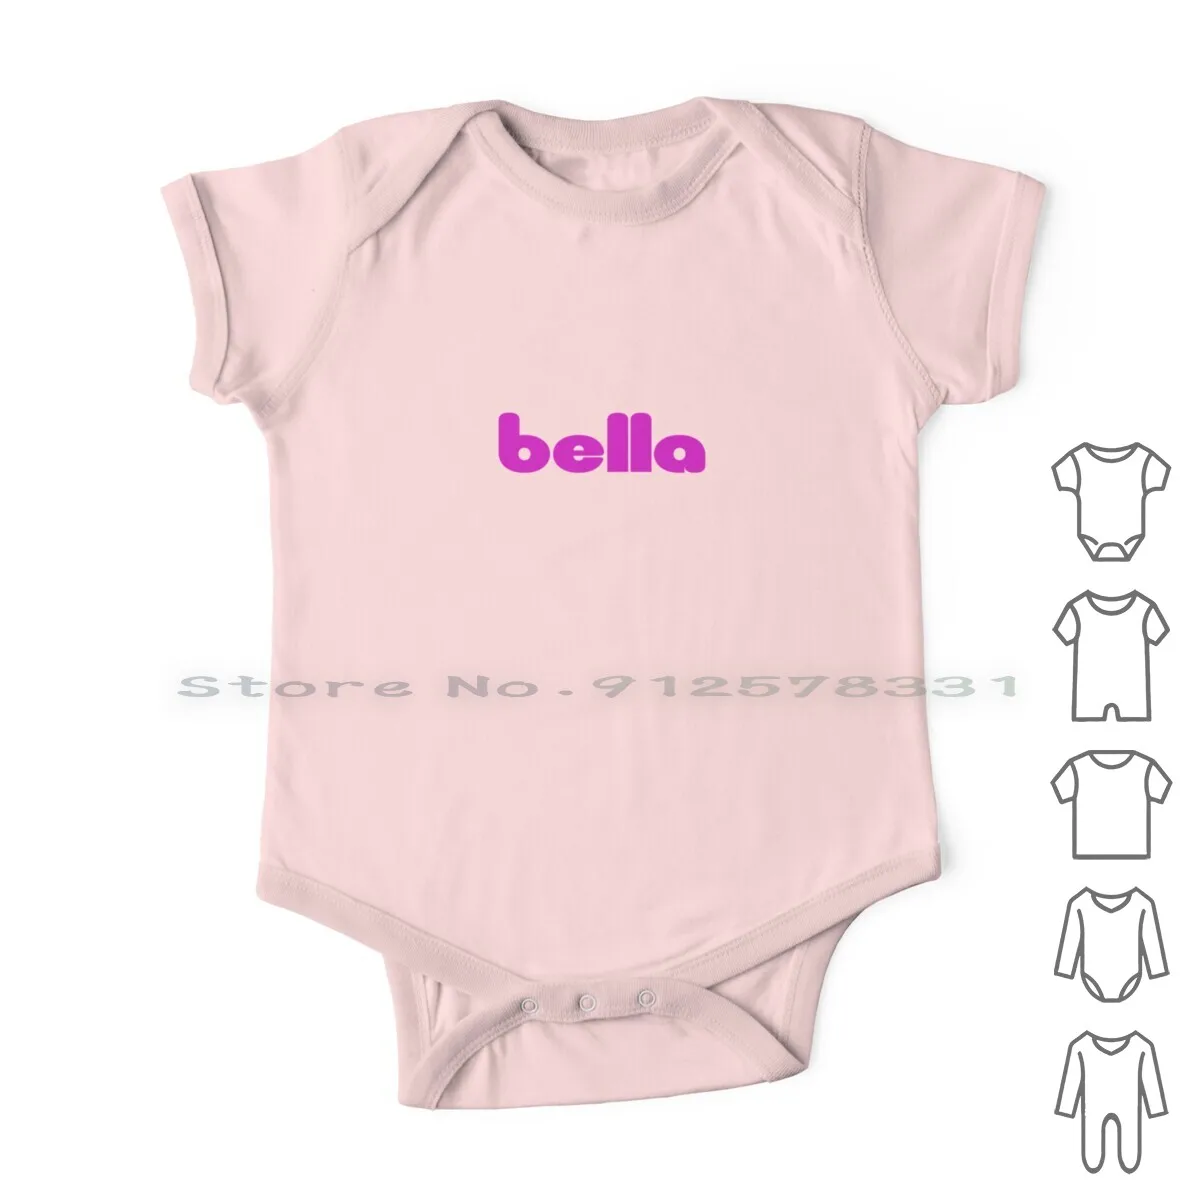 

Женский комбинезон Bella Philosophy, синий комбинезон для новорожденных, хлопковый комбинезон с красивым именем, 2019